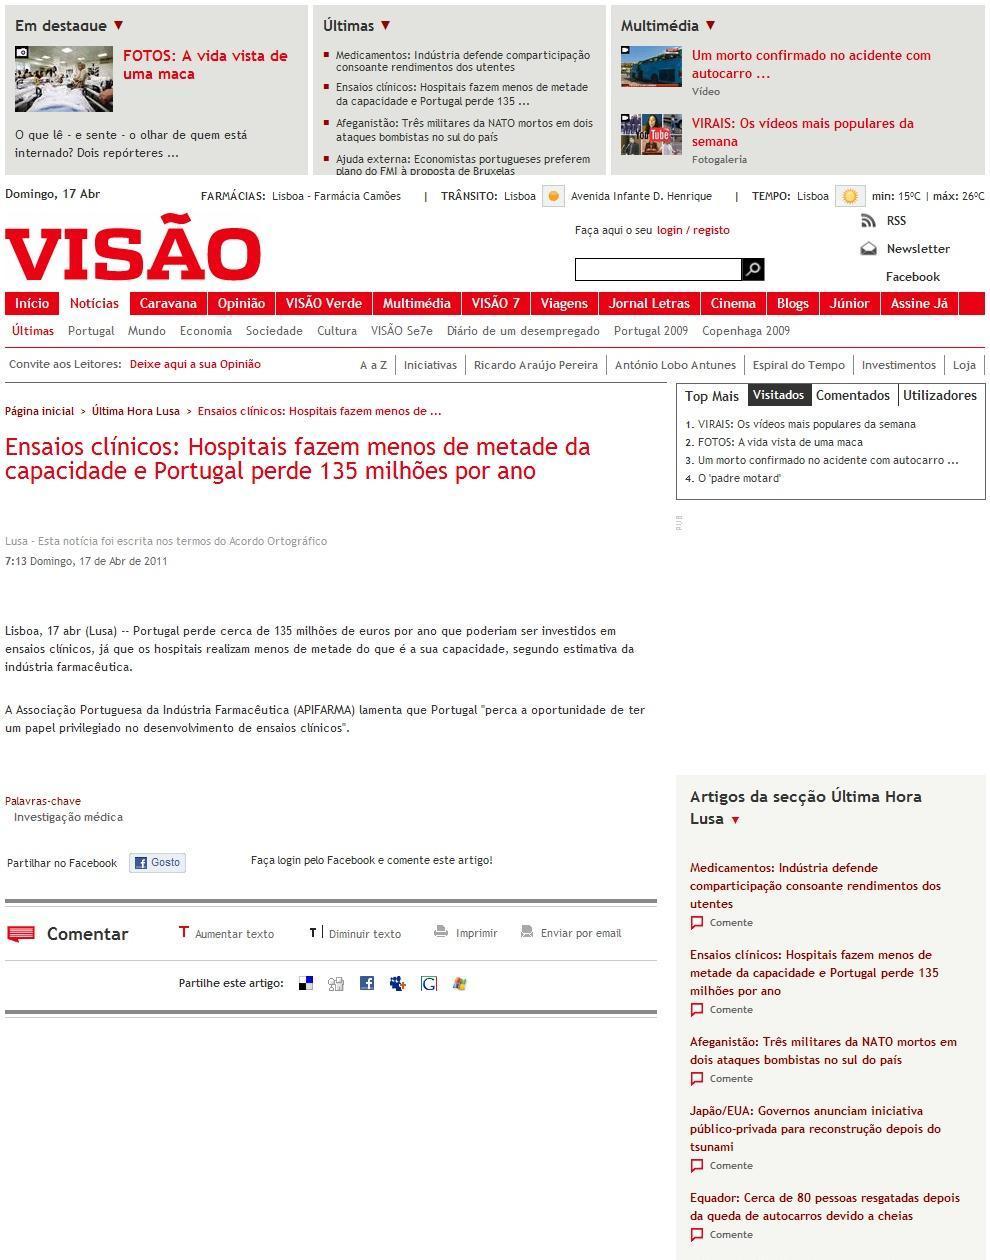 Data: 2011/04/17 VisãoOnline Título: Ensaios clínicos: Hospitais fazem menos de metade da capacidade e Portugal